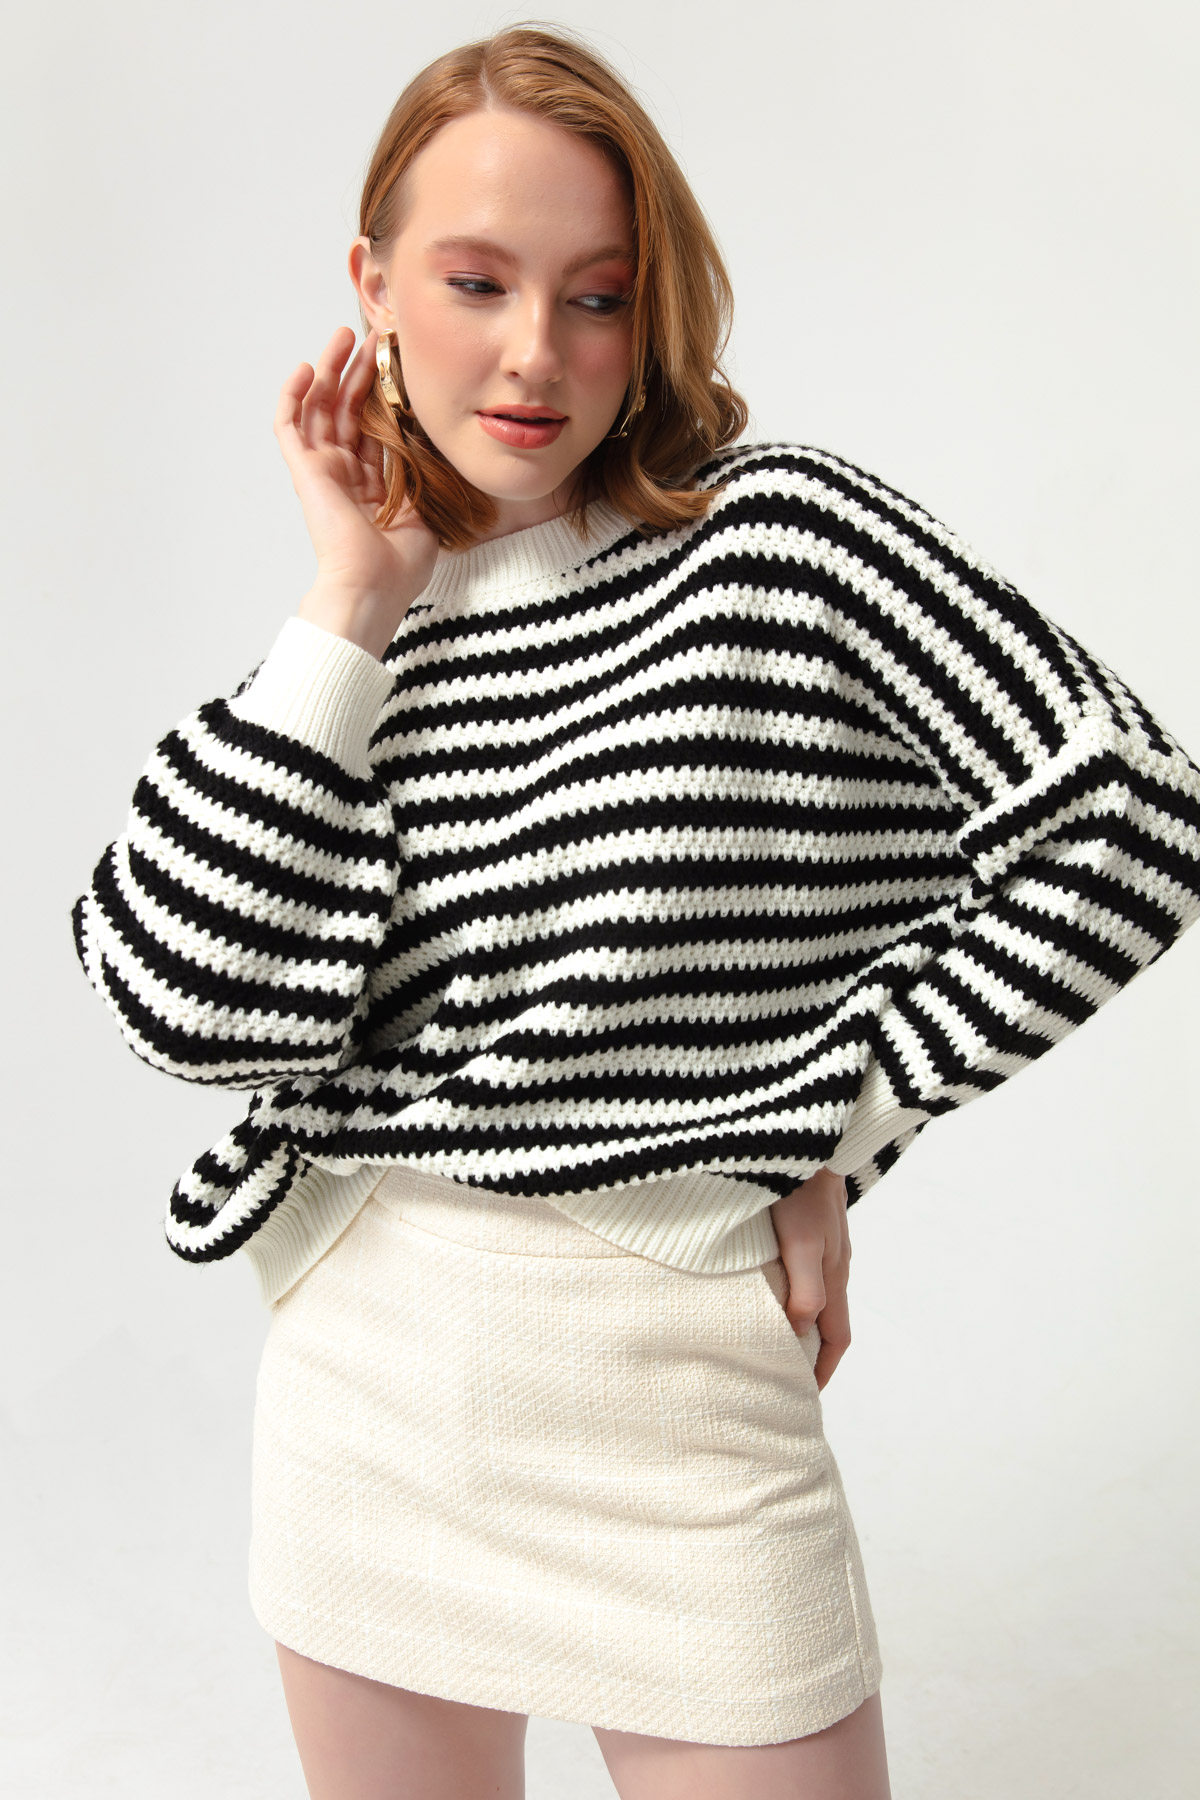 Women's Black-White Striped Knitwear Sweater